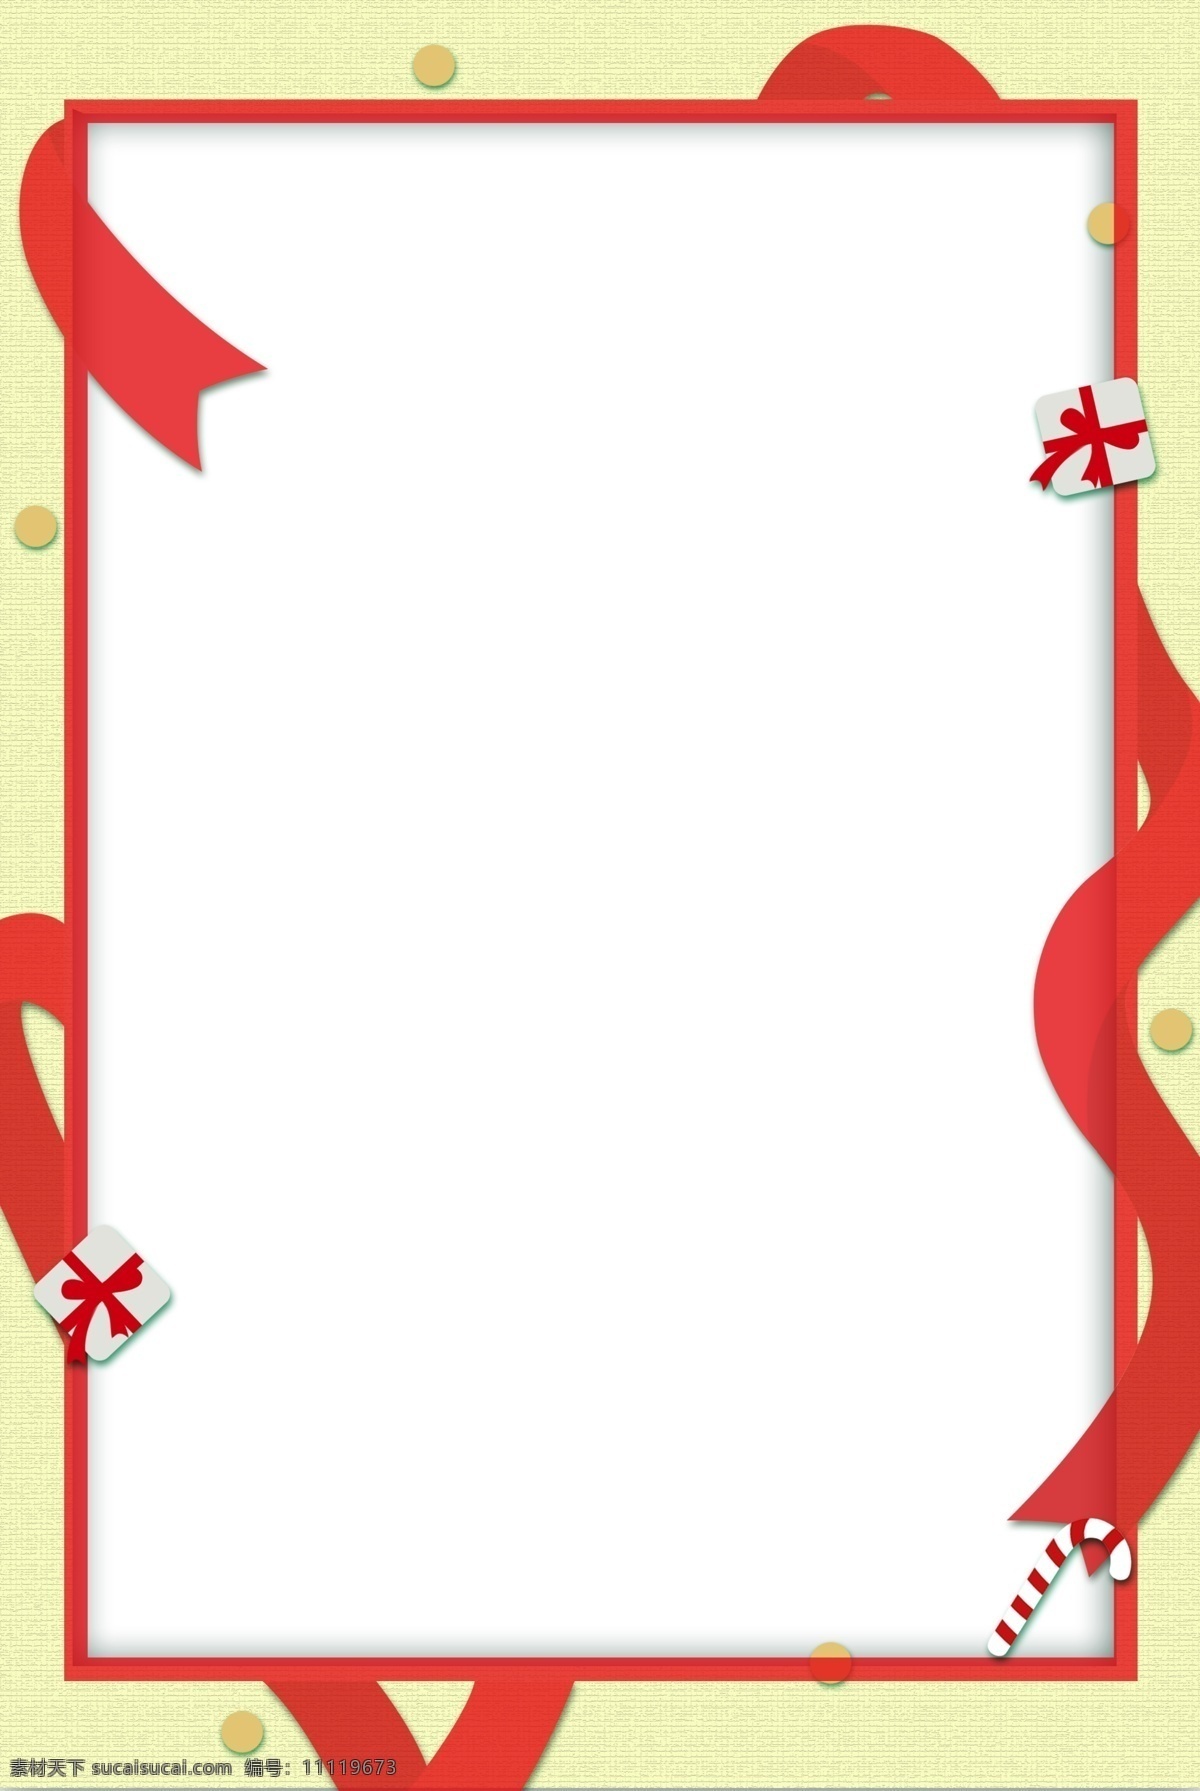 简约 红色 丝绸 边框 背景 清新 文艺 卡通 幸福 祝福 边框背景